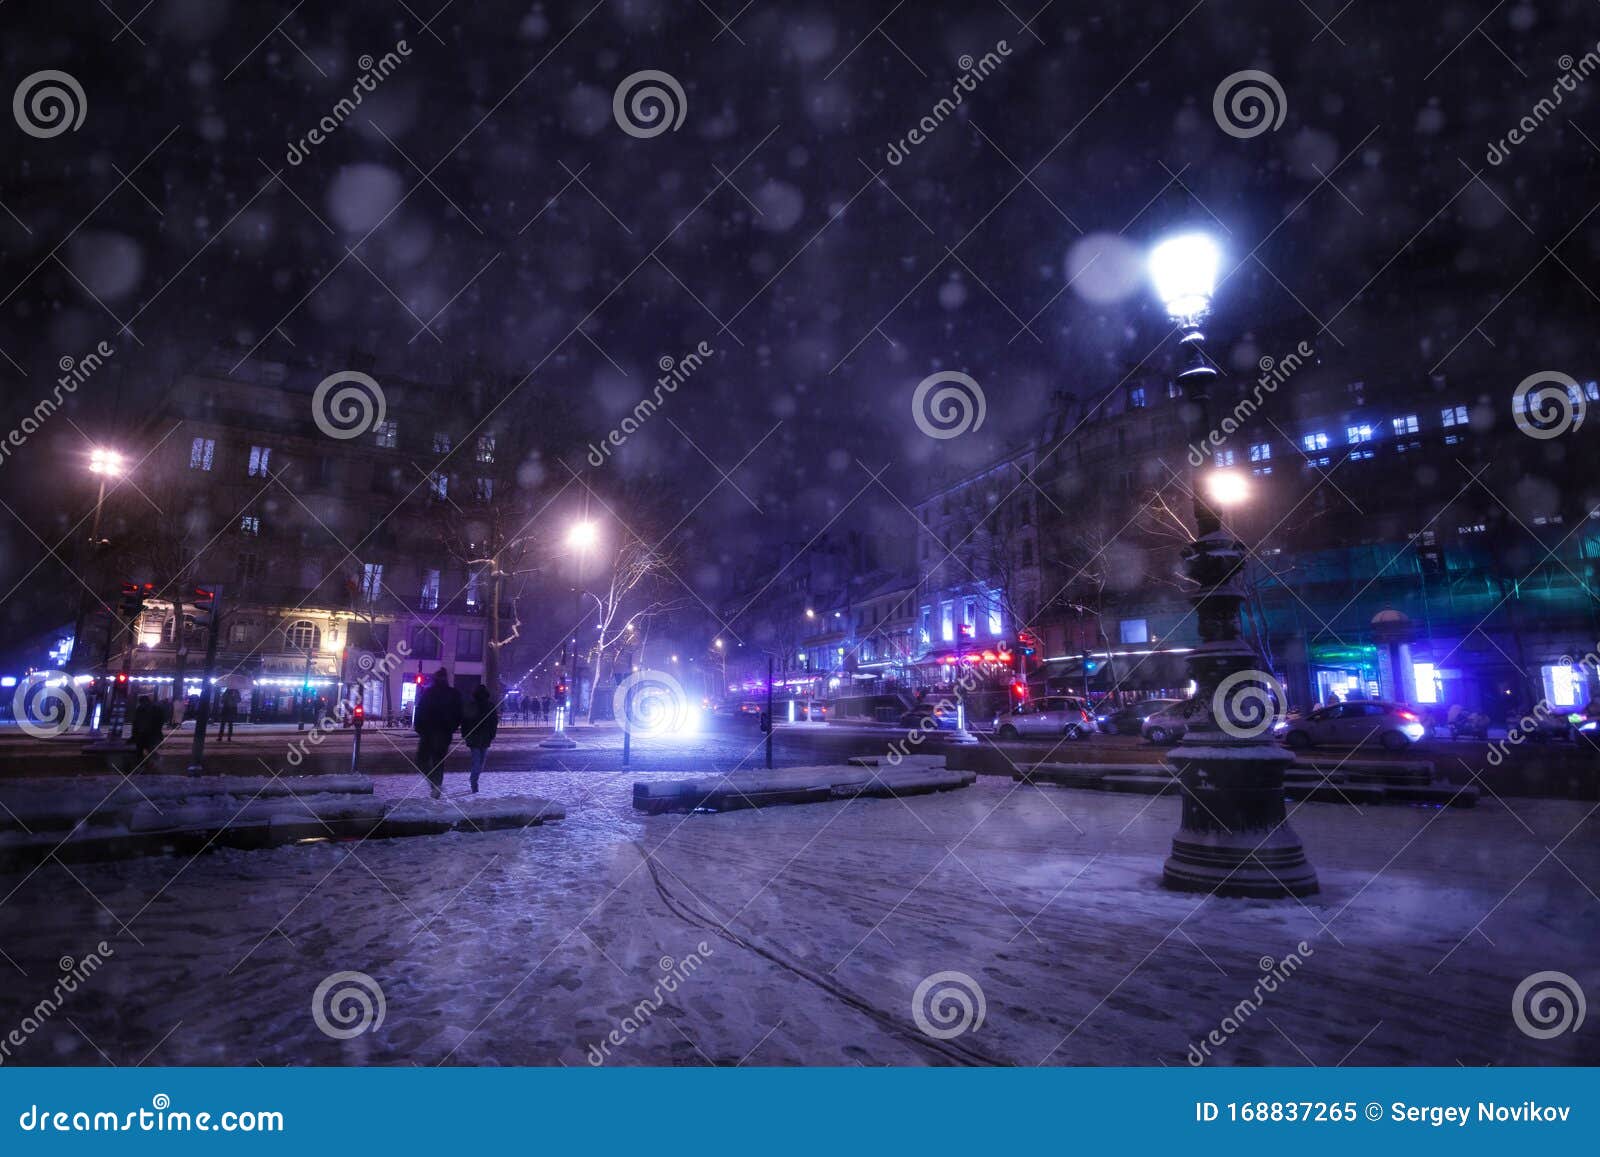 snowfall on republique square in paris at night